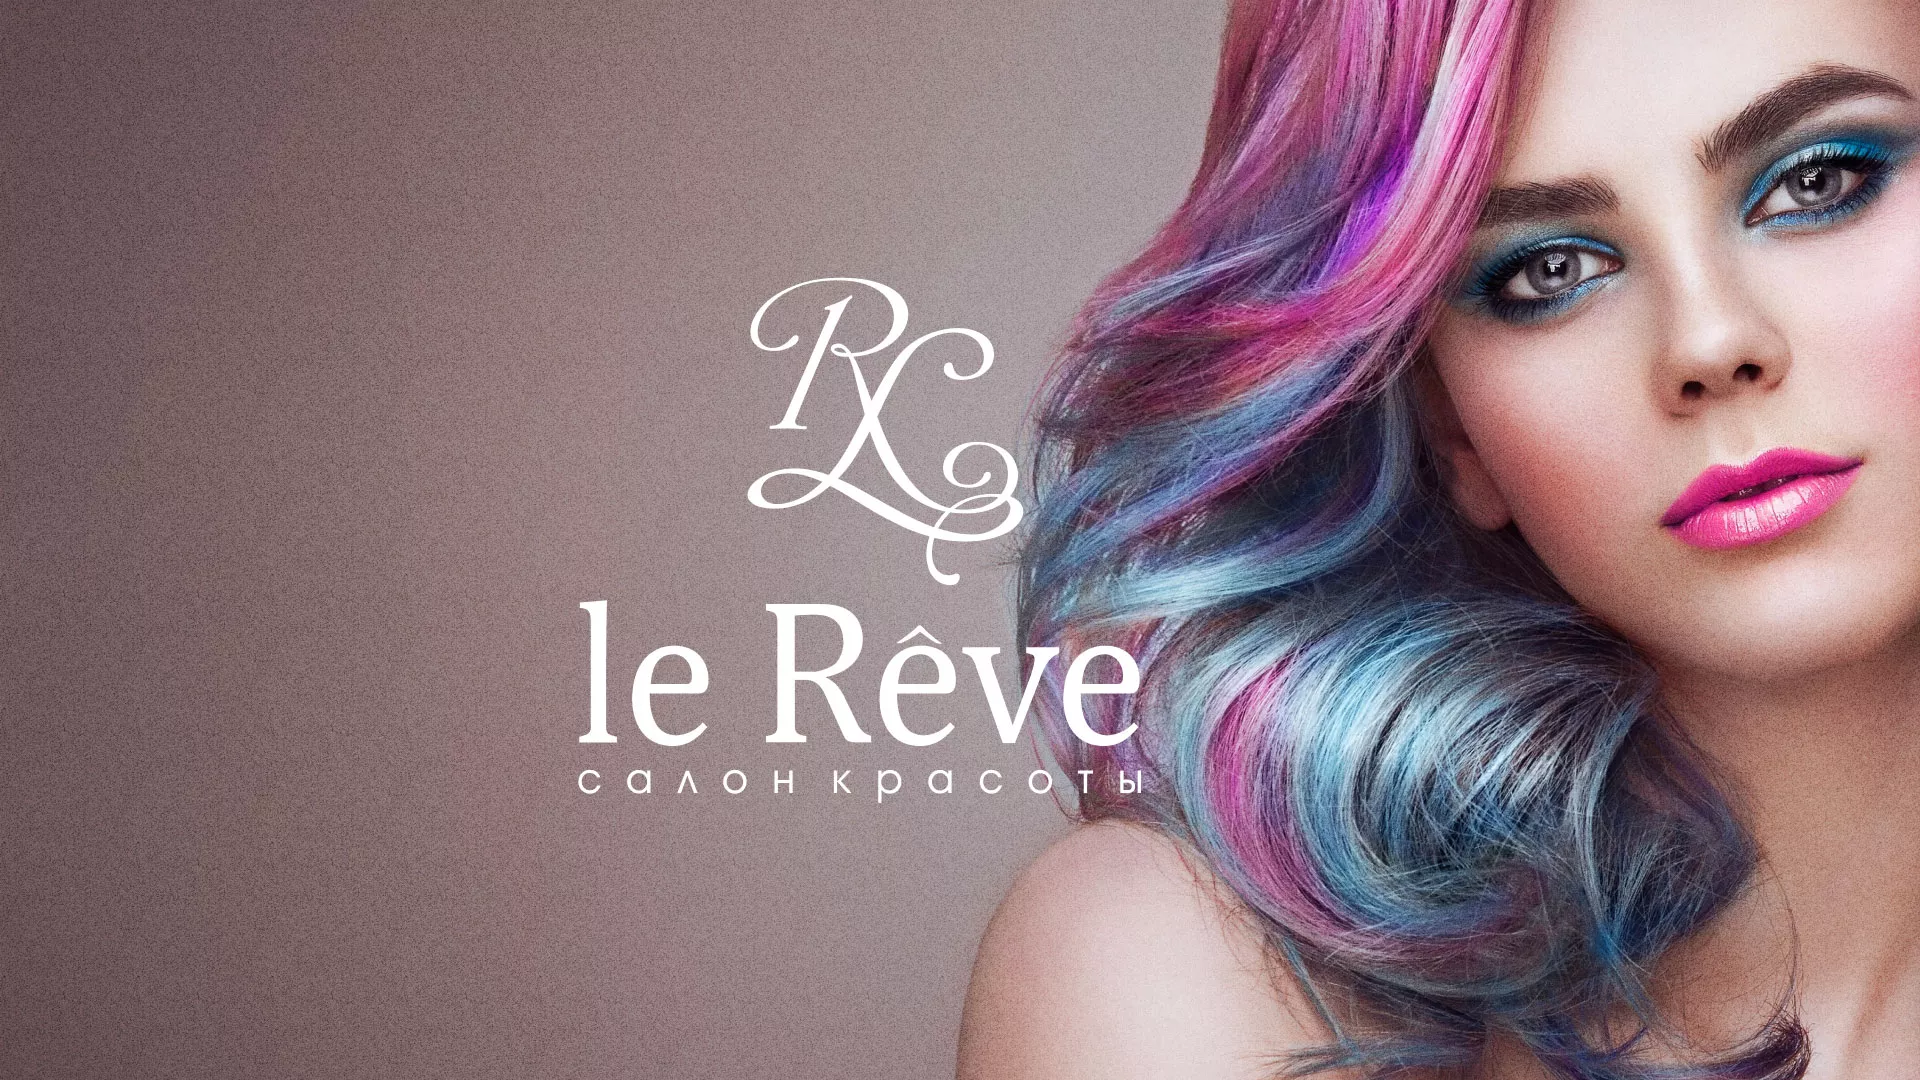 Создание сайта для салона красоты «Le Reve» в Суоярви